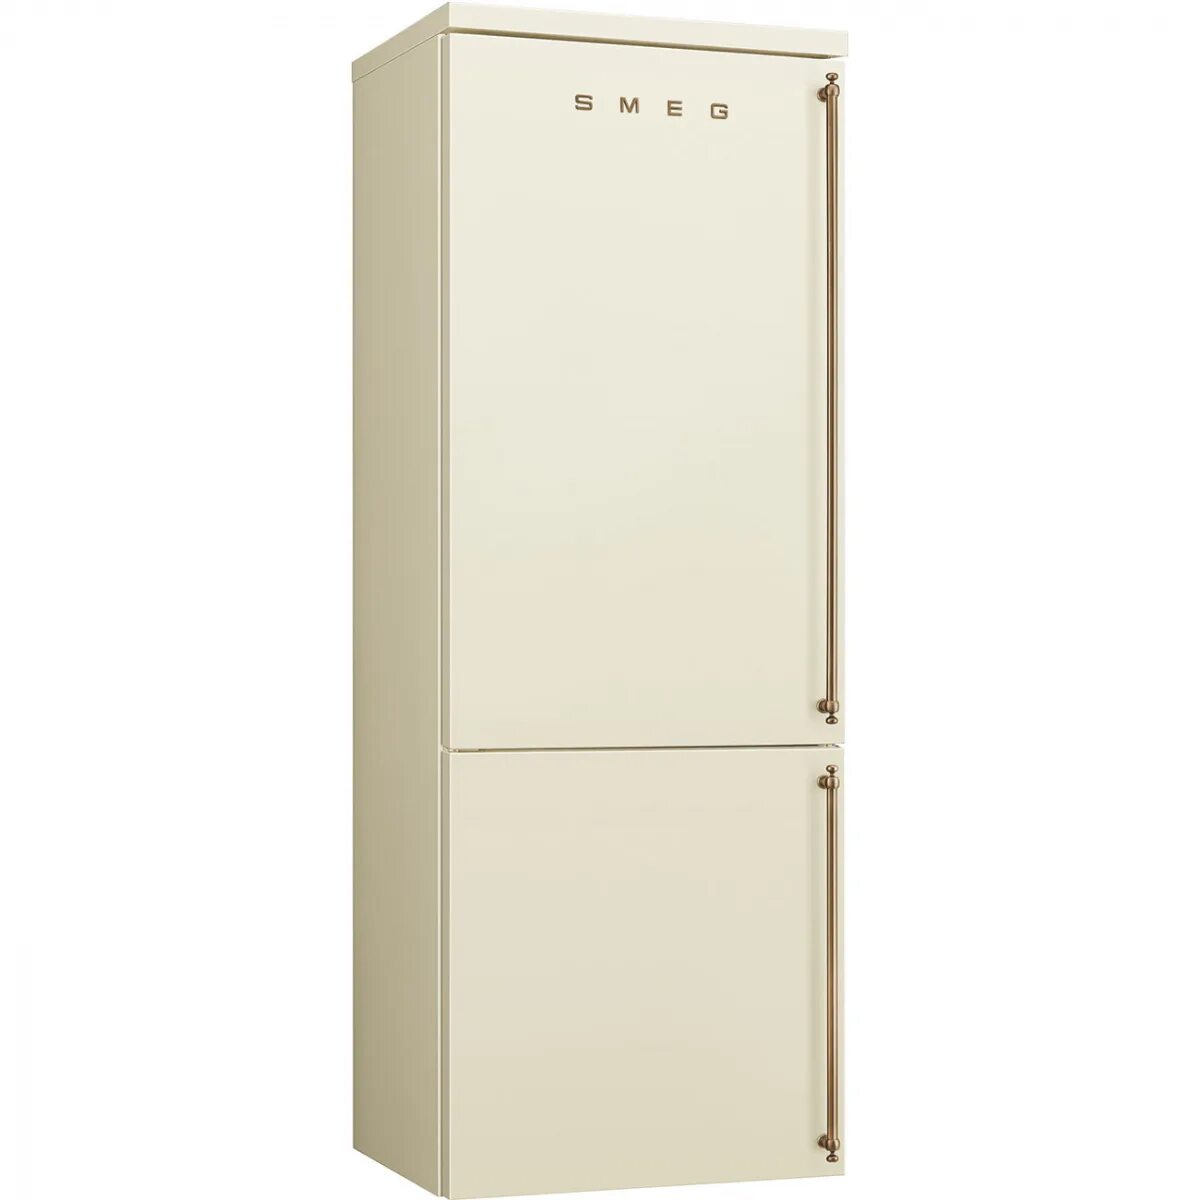 Холодильник слоновая кость. Холодильник Sharp SJ-xe59pmwh. Холодильник Smeg fa8003pos. Sharp SJ-xe55pmbe. Холодильники Smeg fa860p.